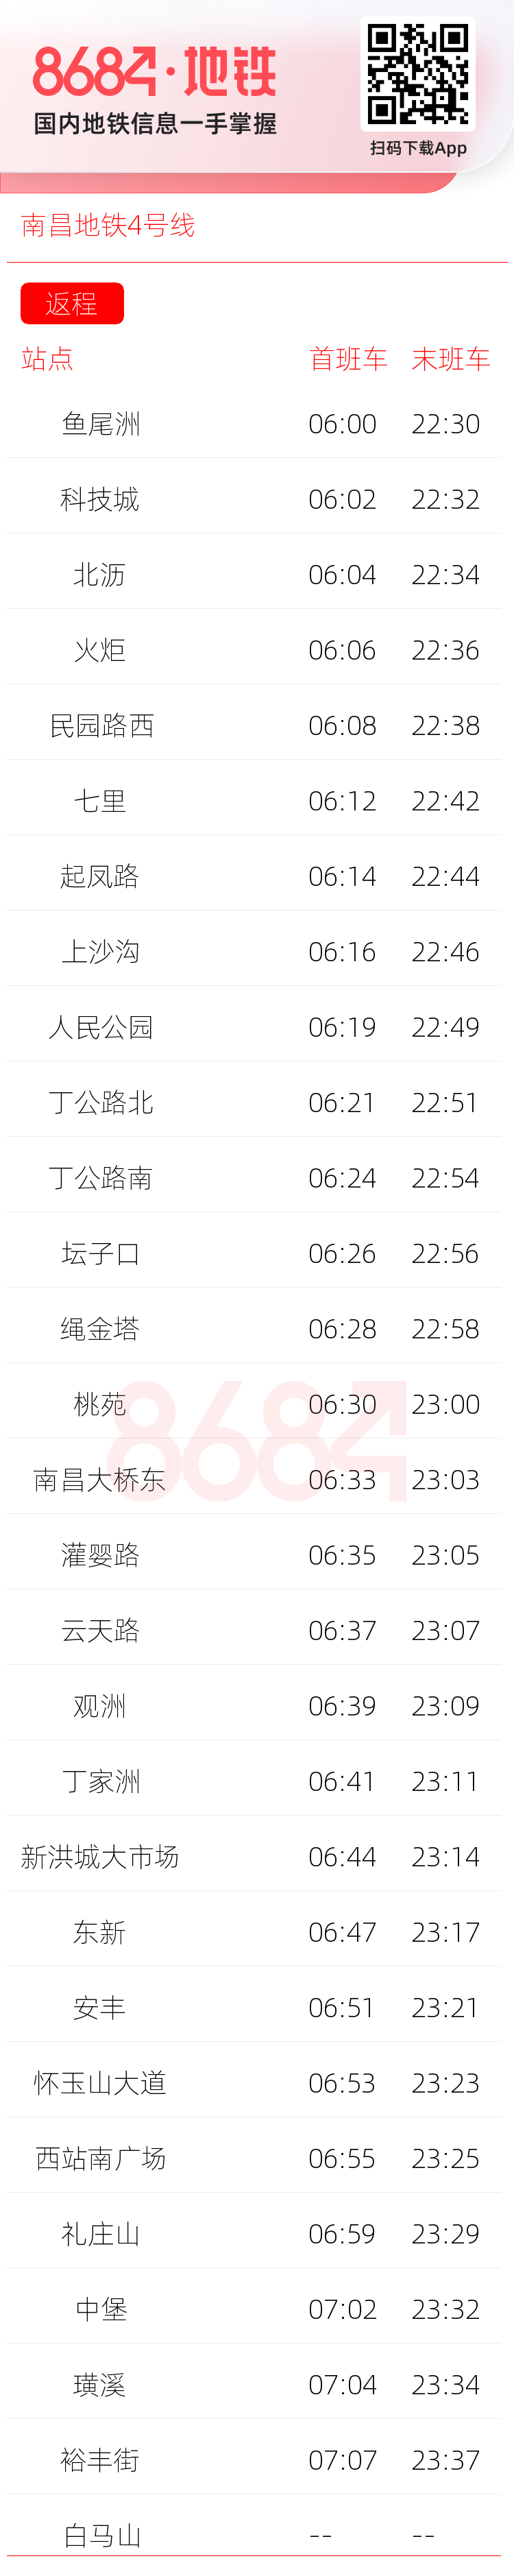 南昌地铁4号线运营时间表